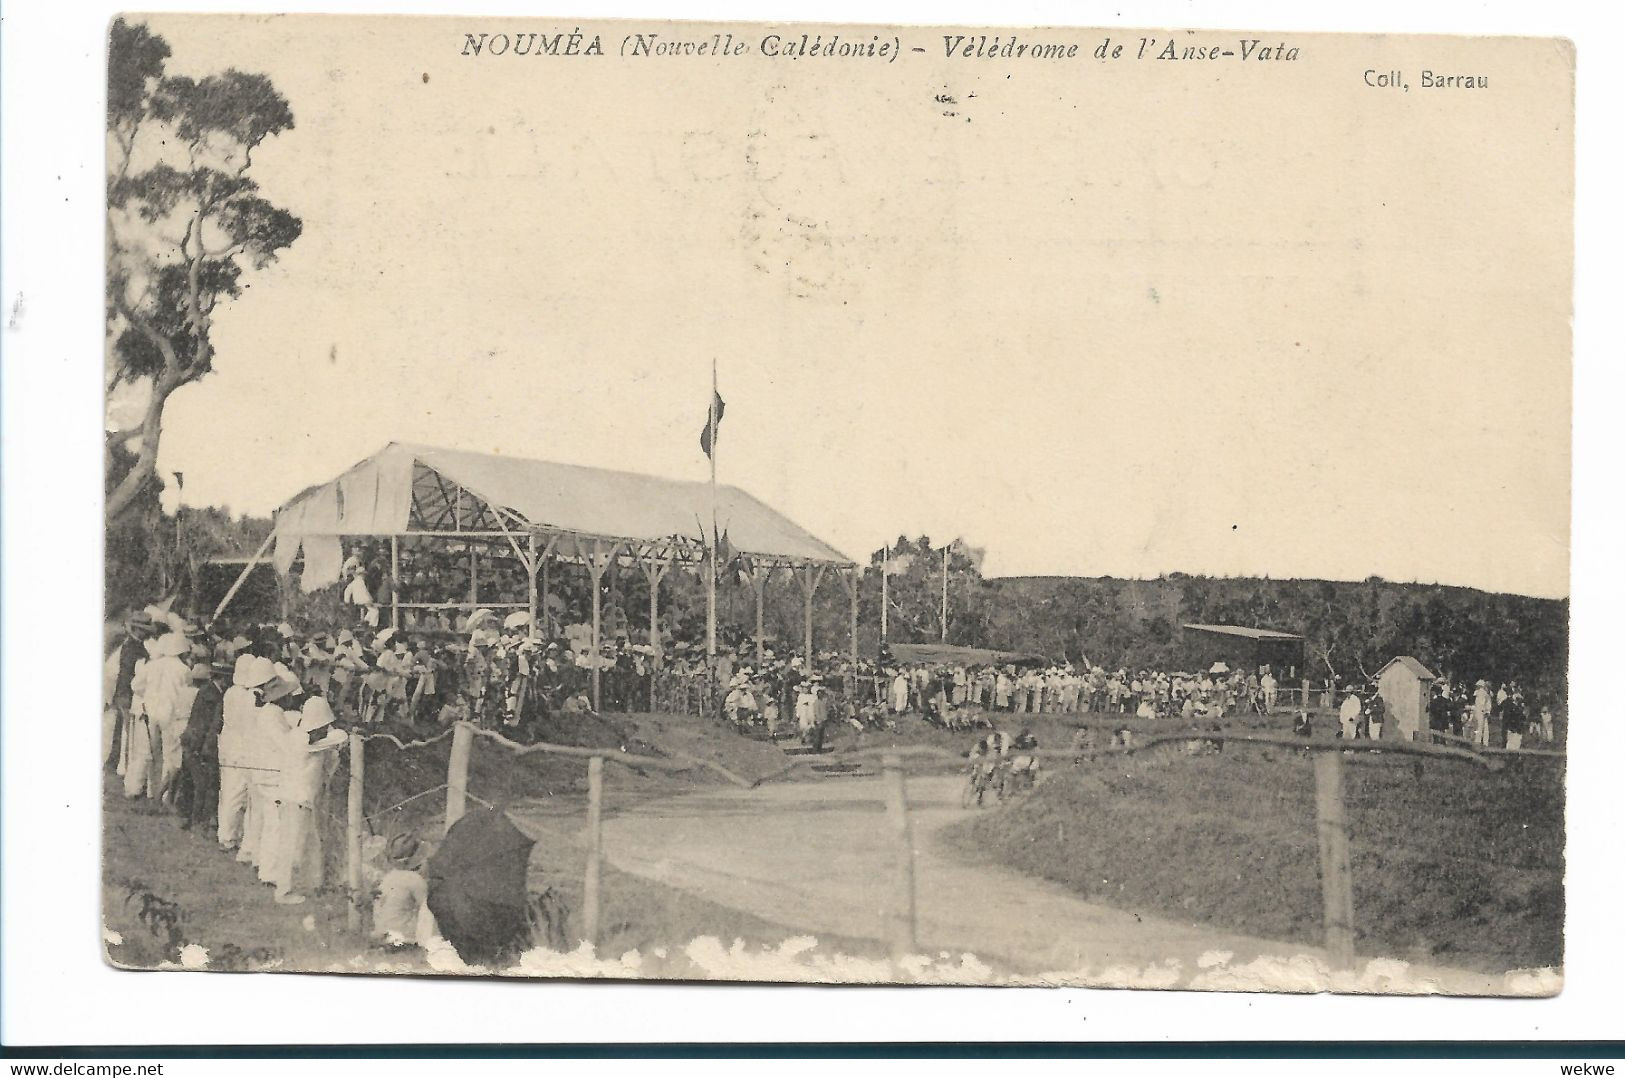 FDO018 / Neukaledonien - 1909 Auf Ansichtskarte Mit Kagu-Vogekmarken (11) - Brieven En Documenten